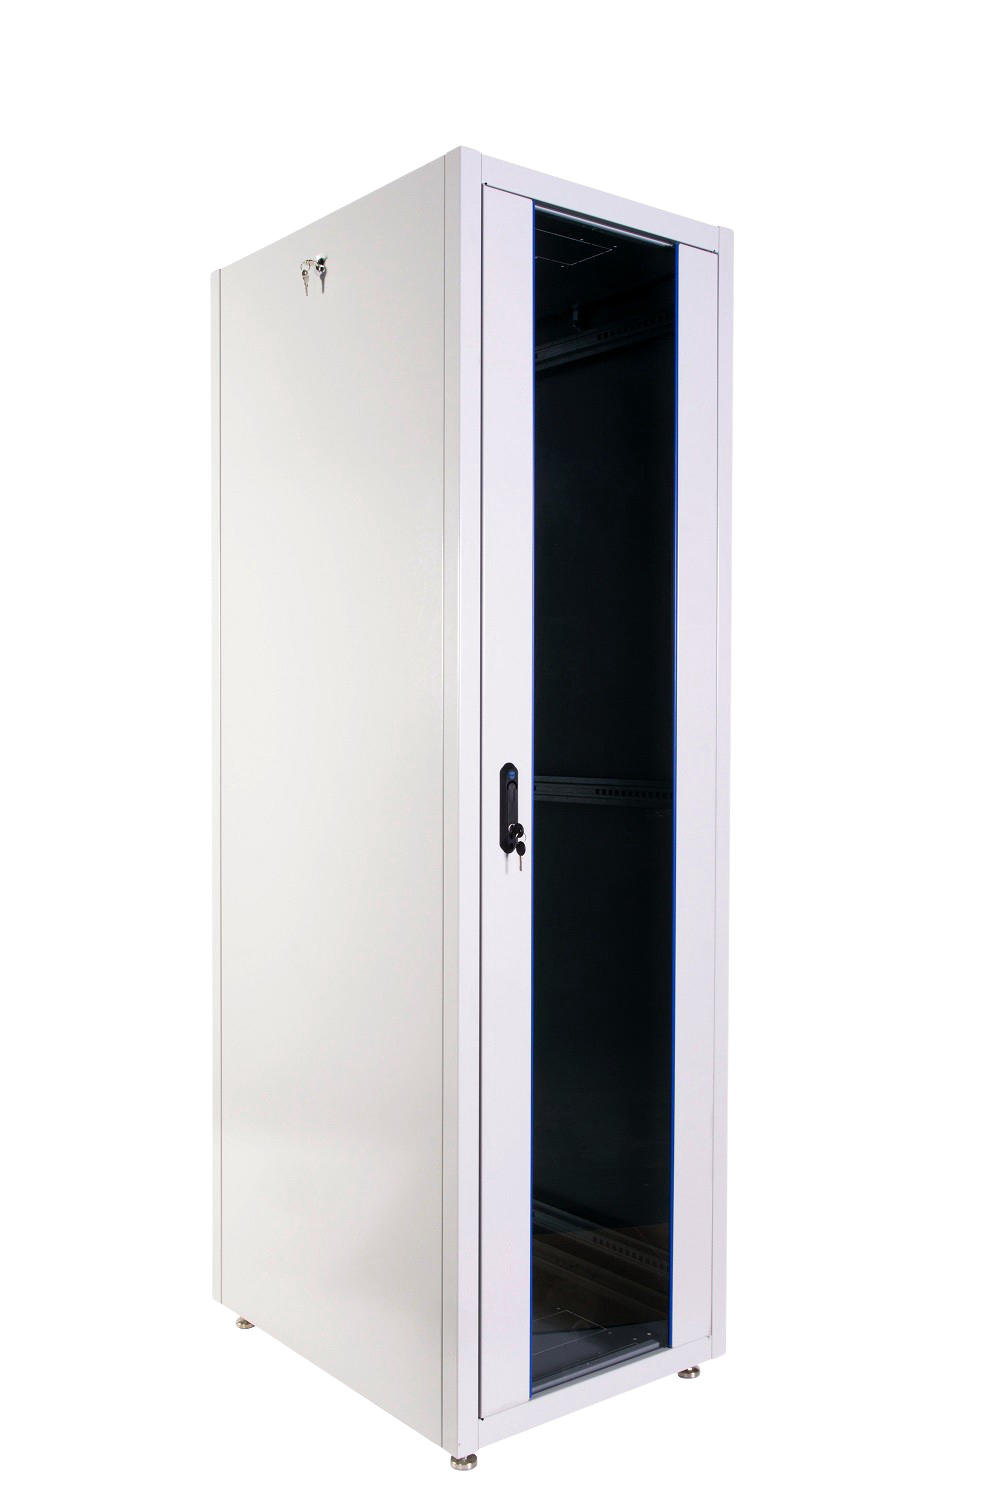 Шкаф телекоммуникационный напольный ЭКОНОМ 48U (800 × 1000) дверь стекло, дверь металл